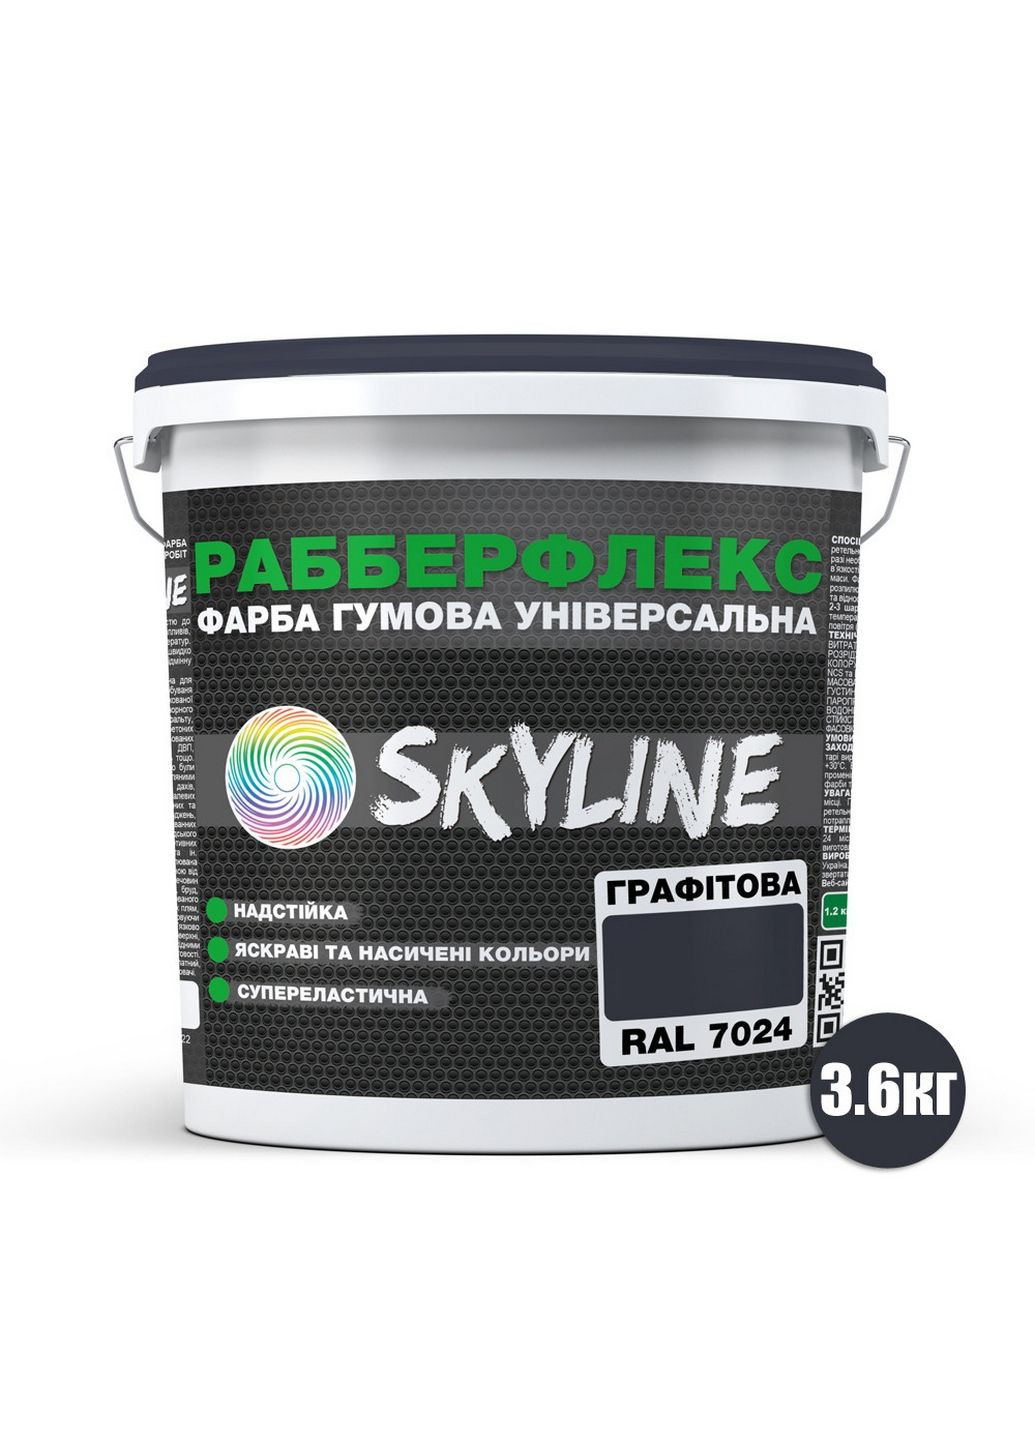 Надстійка фарба гумова супереластична «РабберФлекс» 3,6 кг SkyLine (289368648)